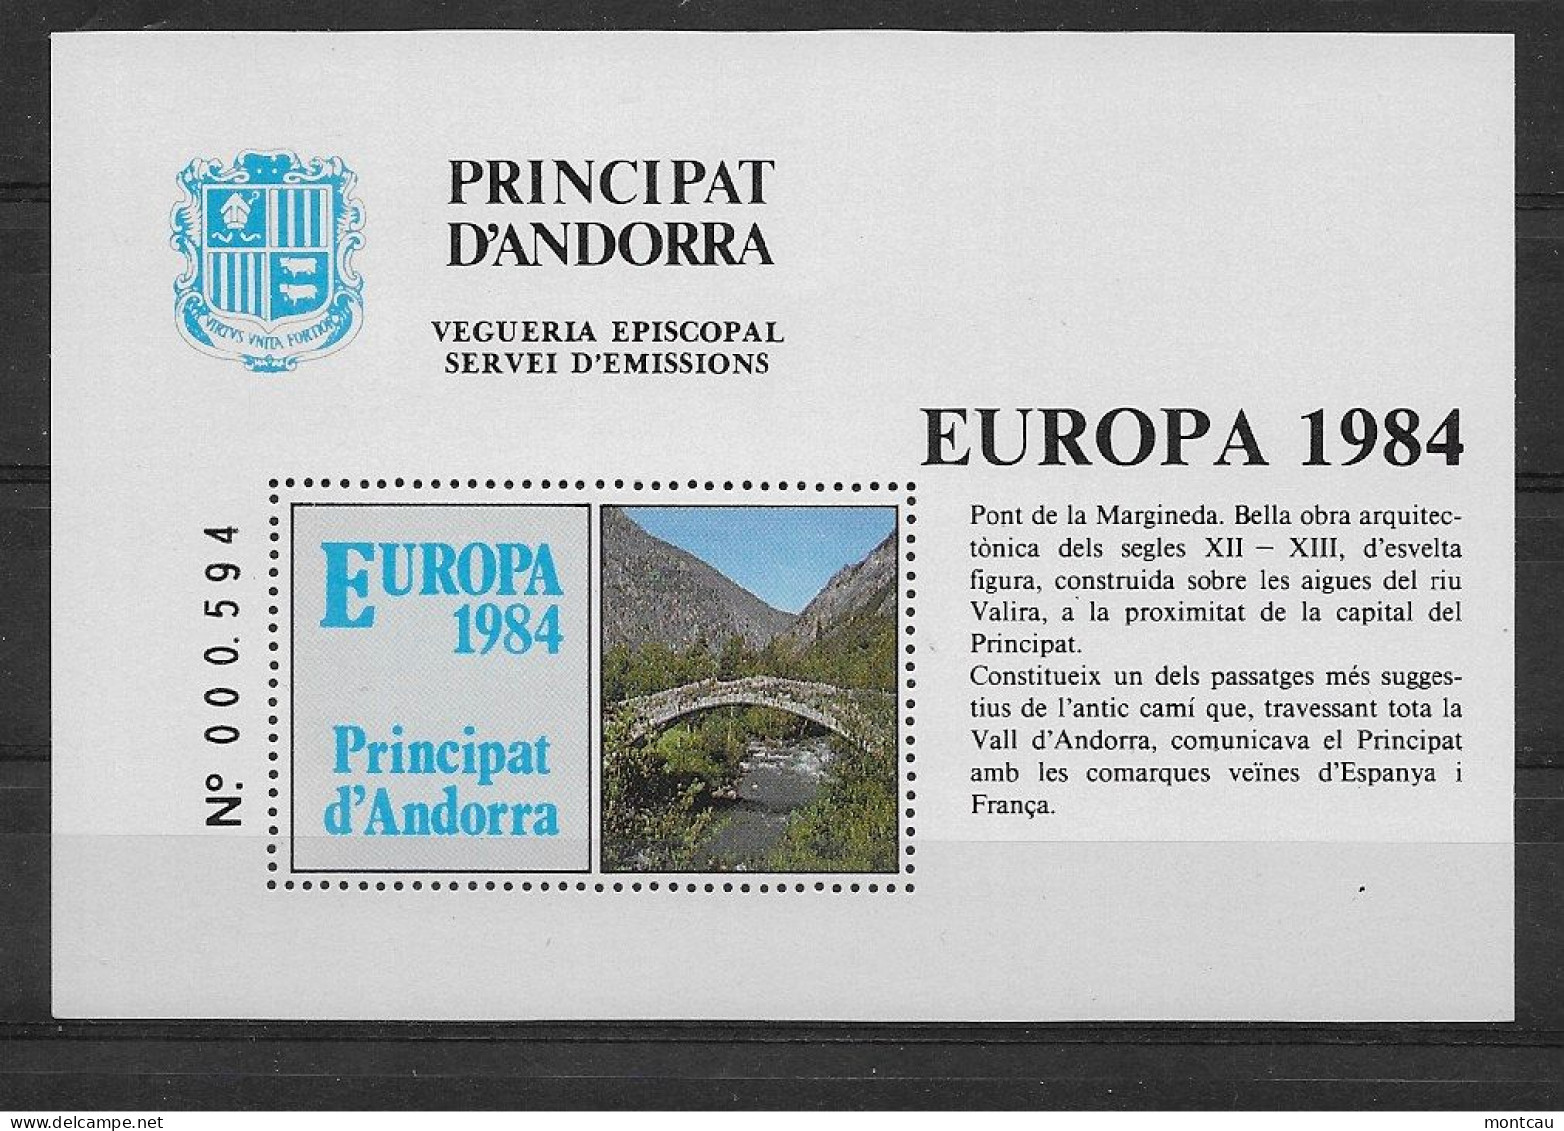 Andorra - 1984 - Vegueria Episcopal Europa - Bischöfliche Viguerie